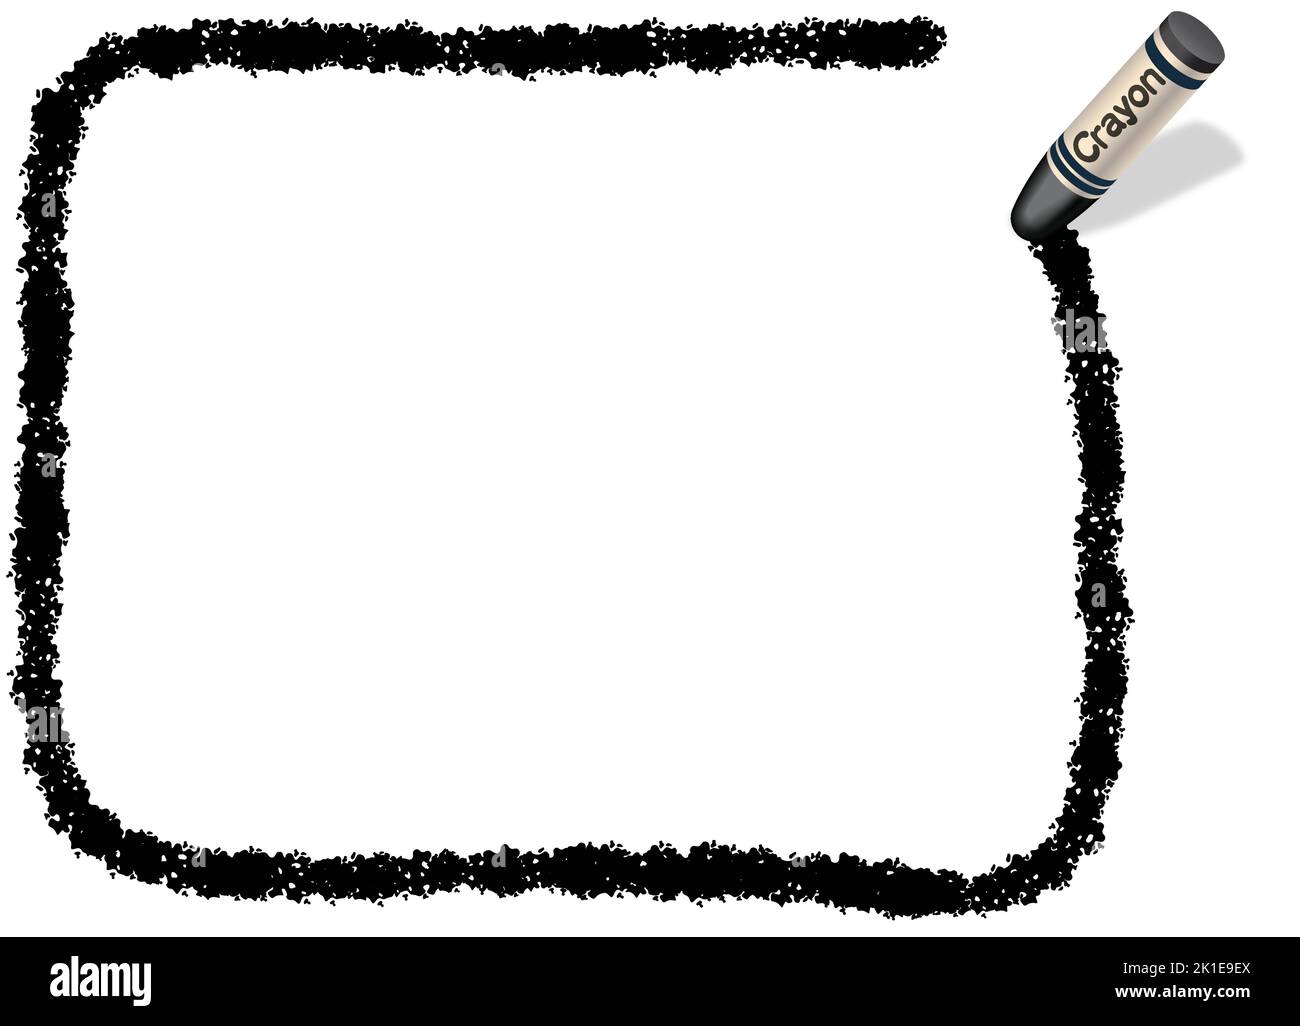 Handgezeichneter Vektor Schwarzes Rechteck Crayon Texture Frame isoliert auf Weißem Hintergrund. Stock Vektor